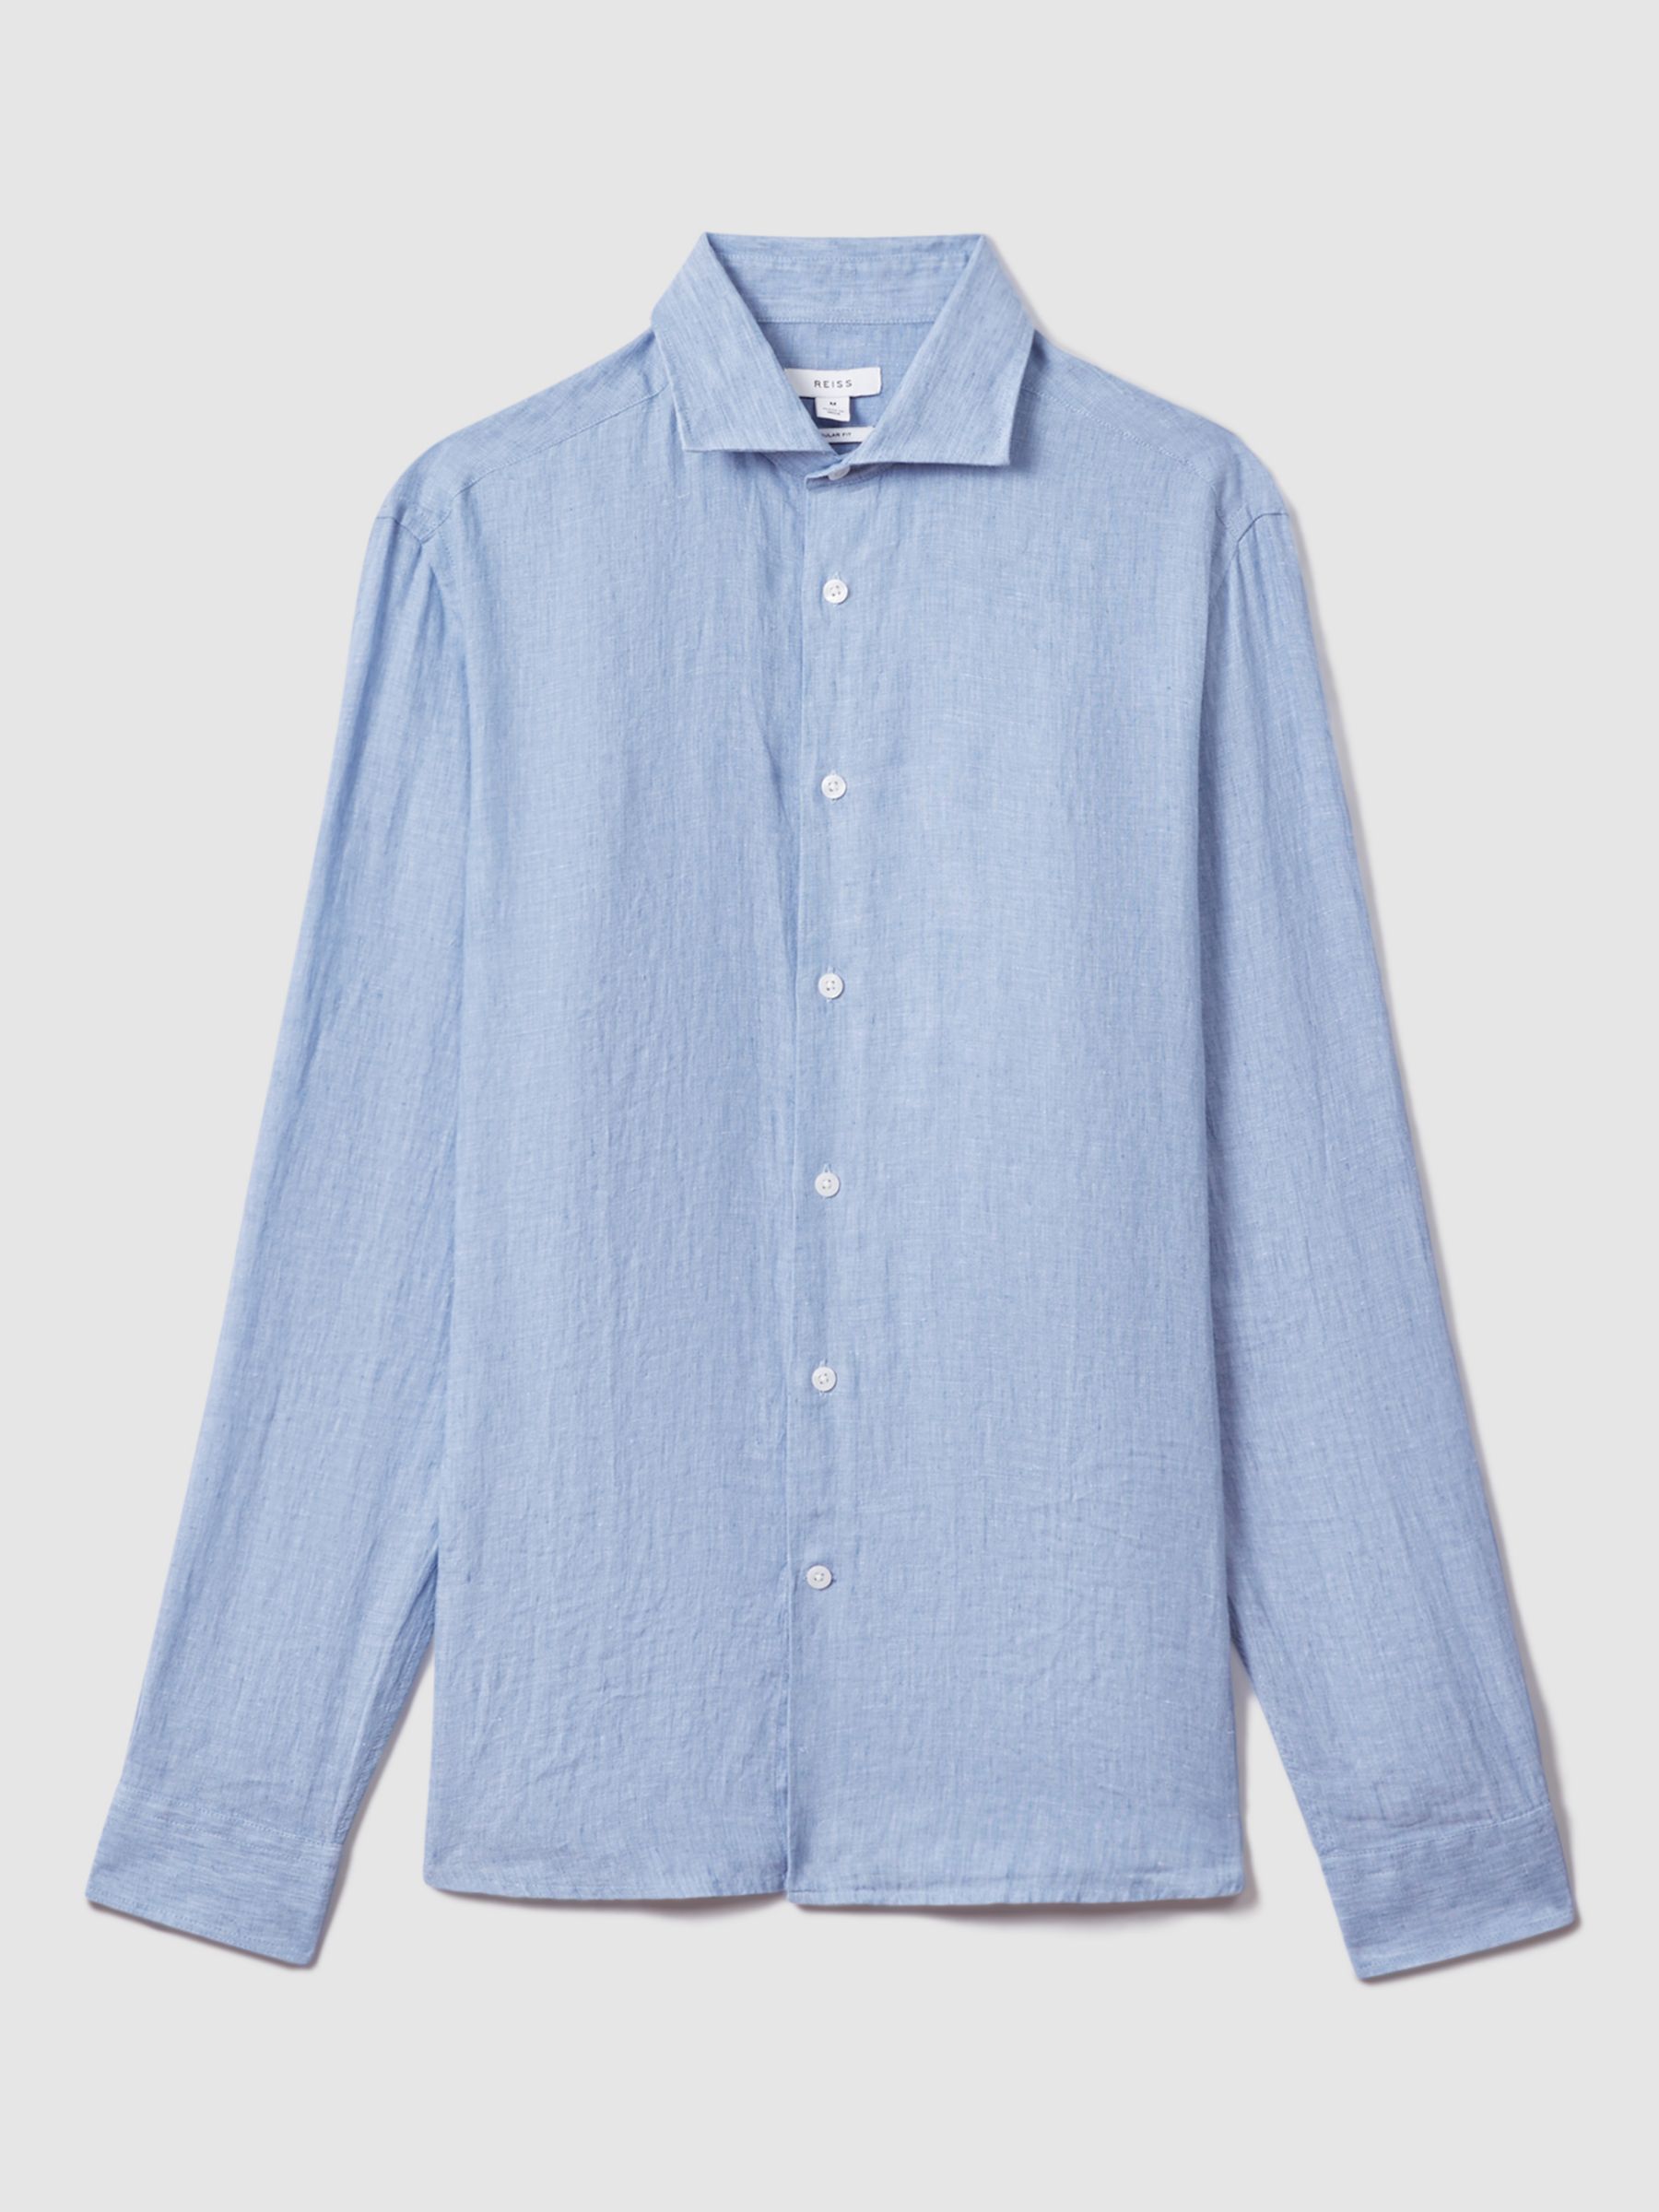 Reiss Ruban Long Sleeve Linen Shirt, Sky Blue, XS